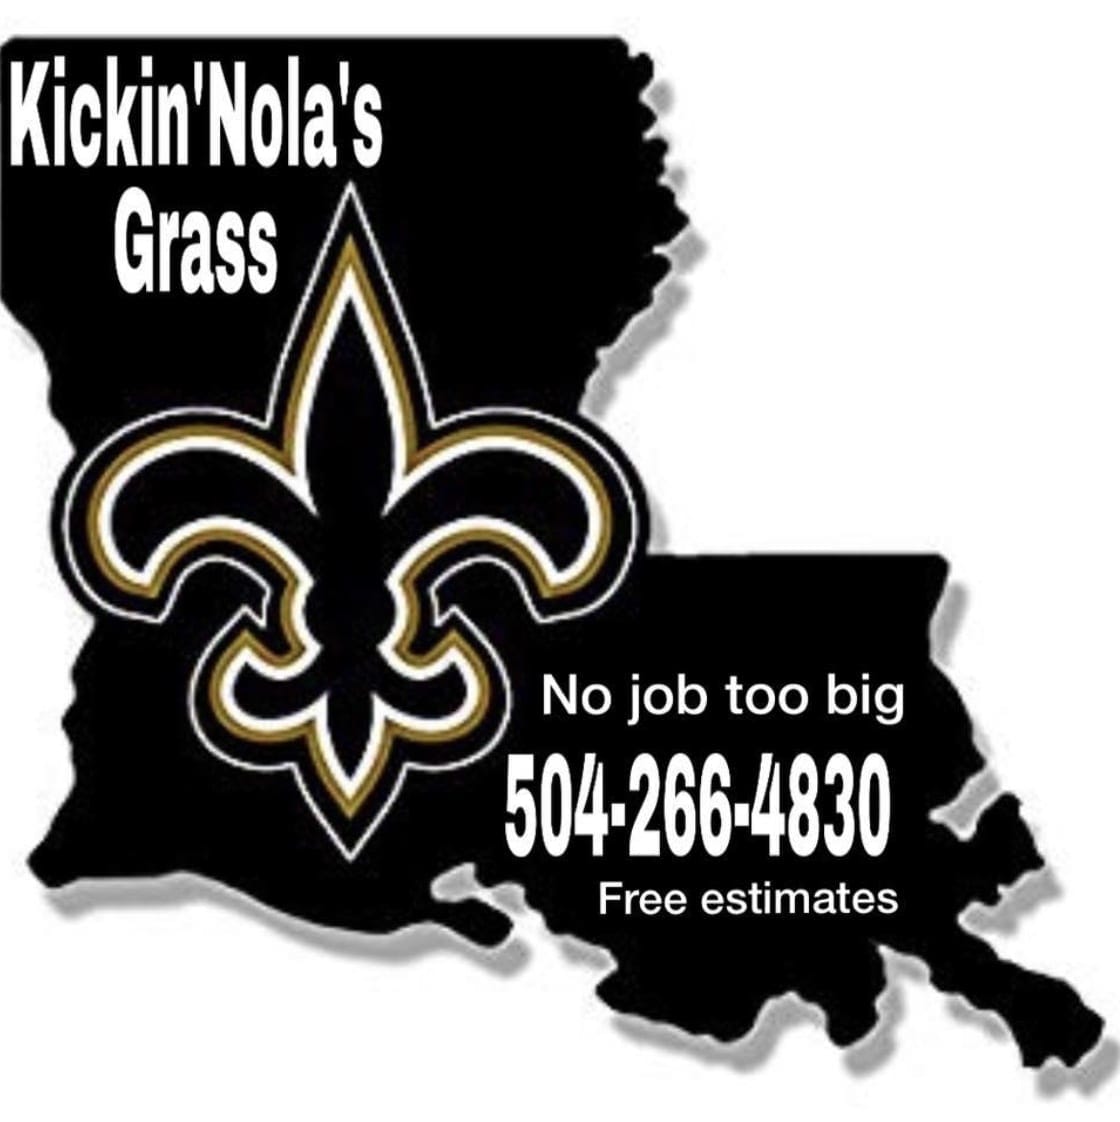 Kickin’Nolas Grass